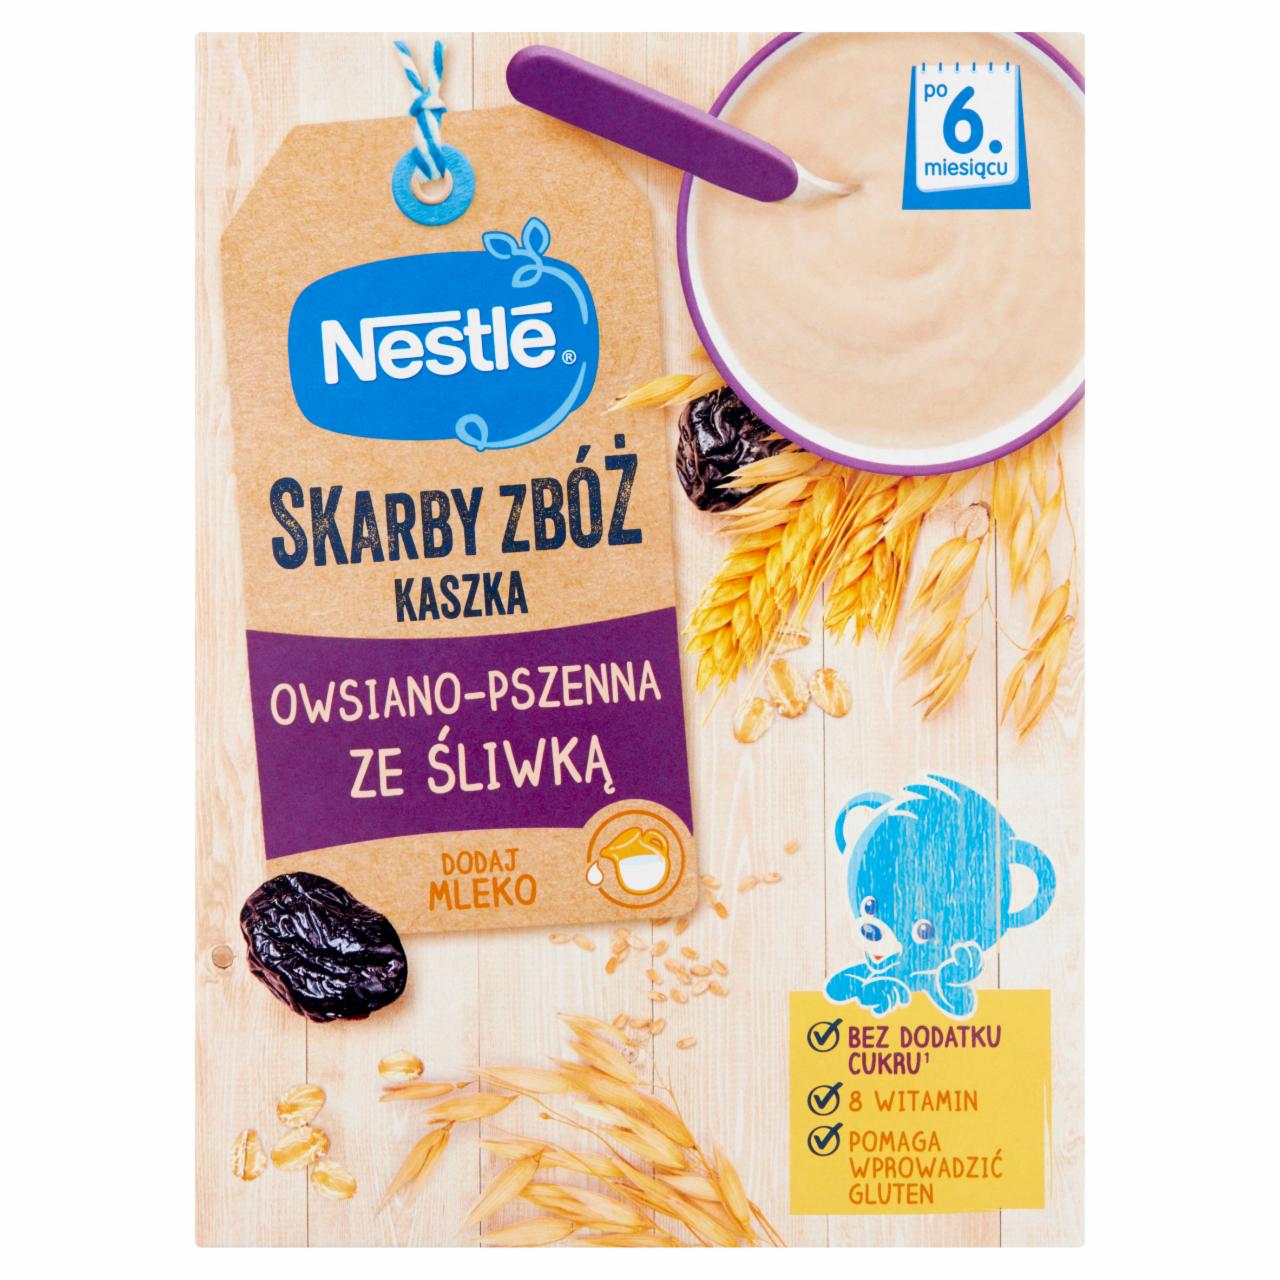 Zdjęcia - Nestlé Skarby Zbóż Kaszka owsiano-pszenna ze śliwką dla niemowląt po 6. miesiącu 250 g